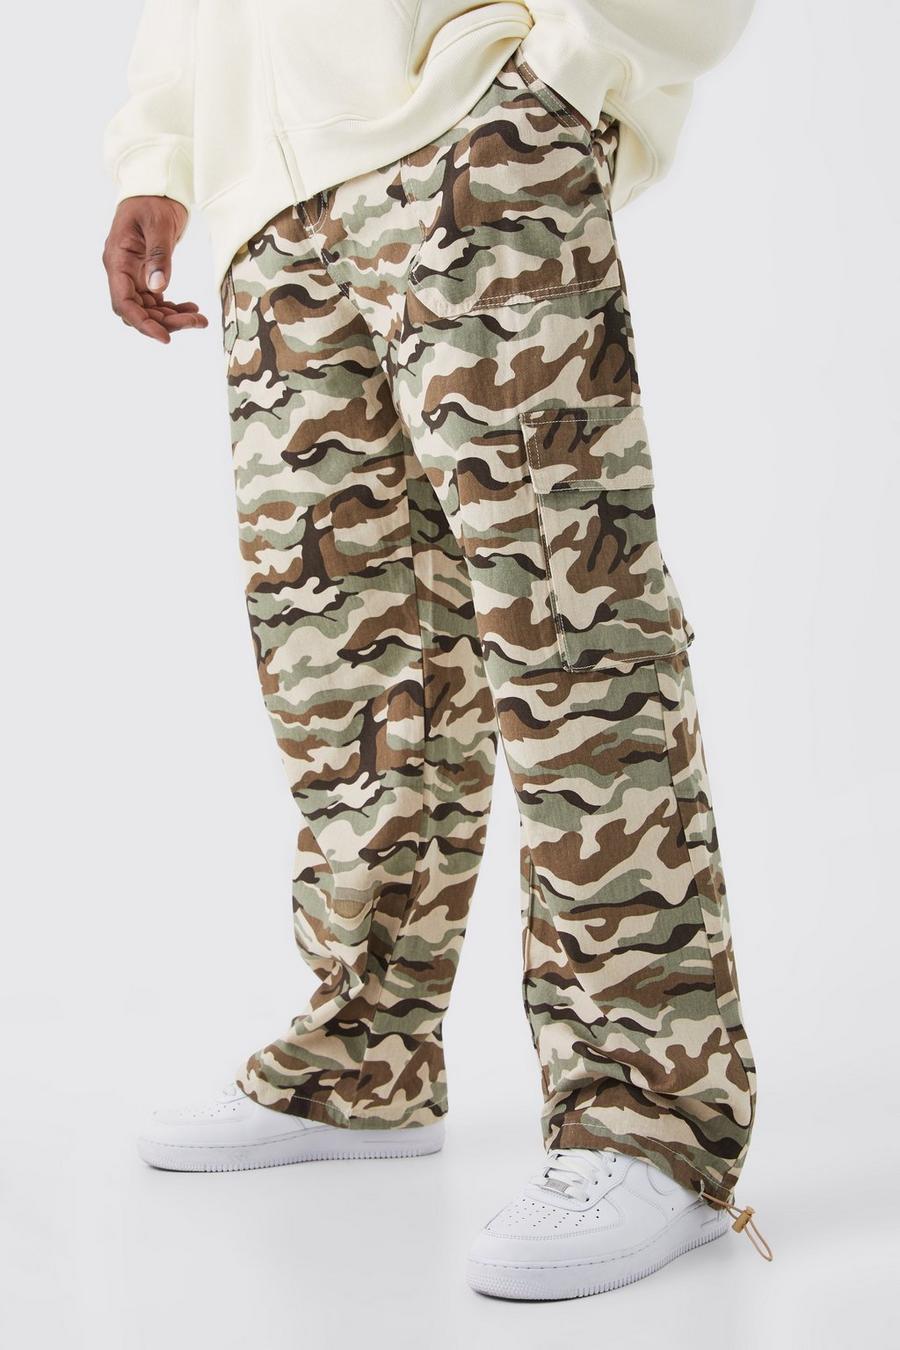 Pantaloni Plus Size rilassati in fantasia militare con tasche Cargo, Sand